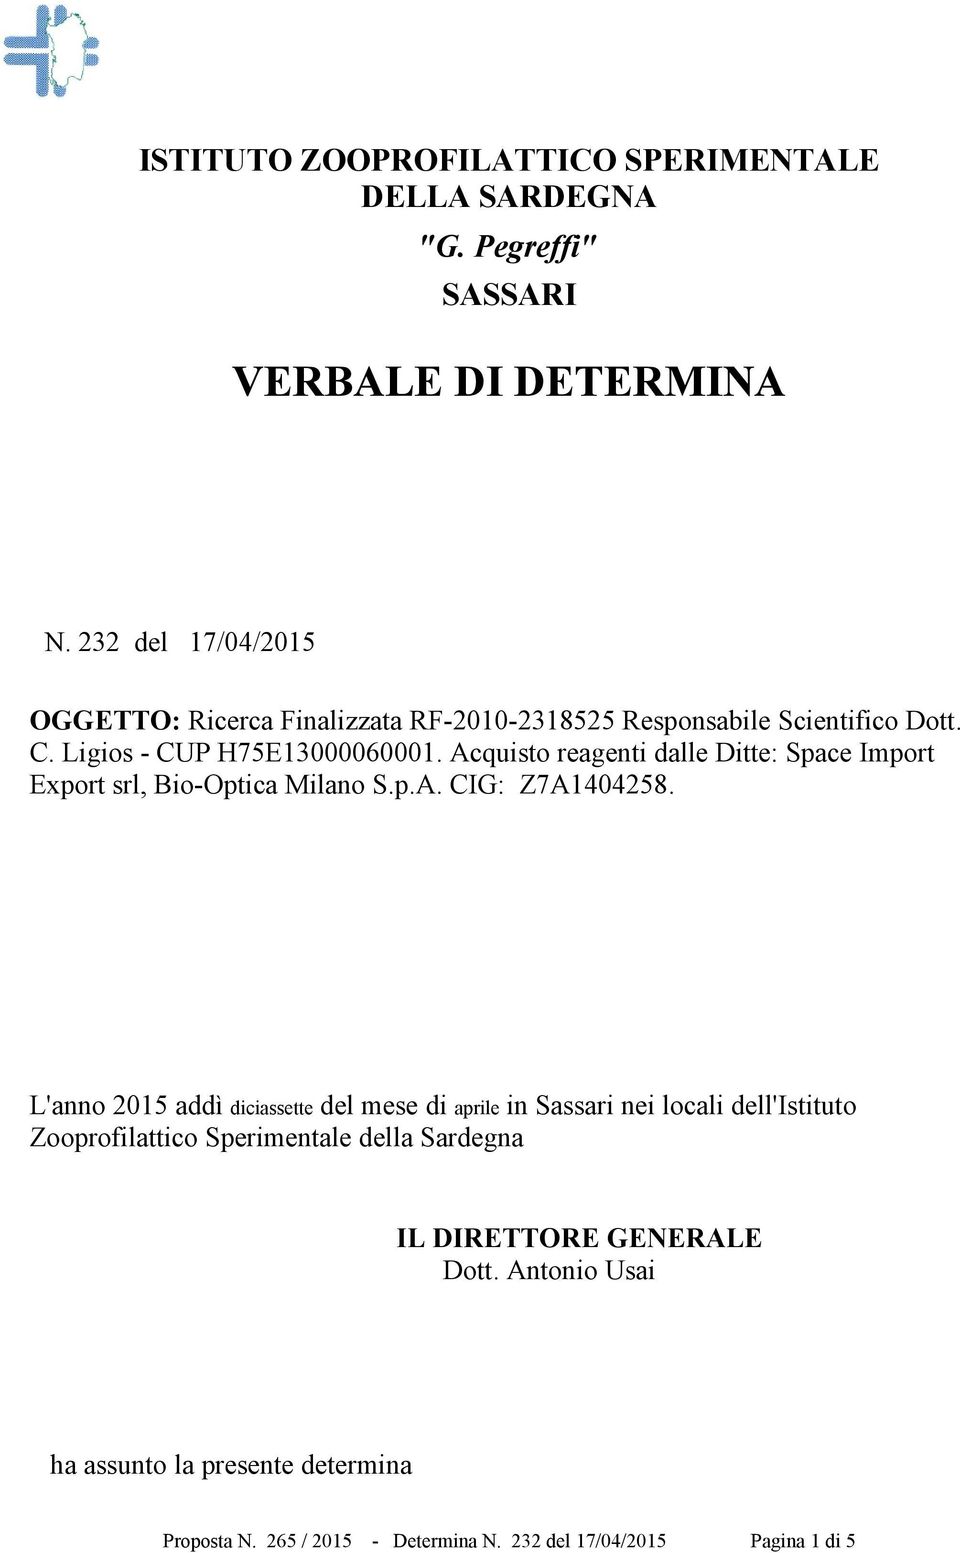 Acquisto reagenti dalle Ditte: Space Import Export srl, Bio-Optica Milano S.p.A. CIG: Z7A1404258.